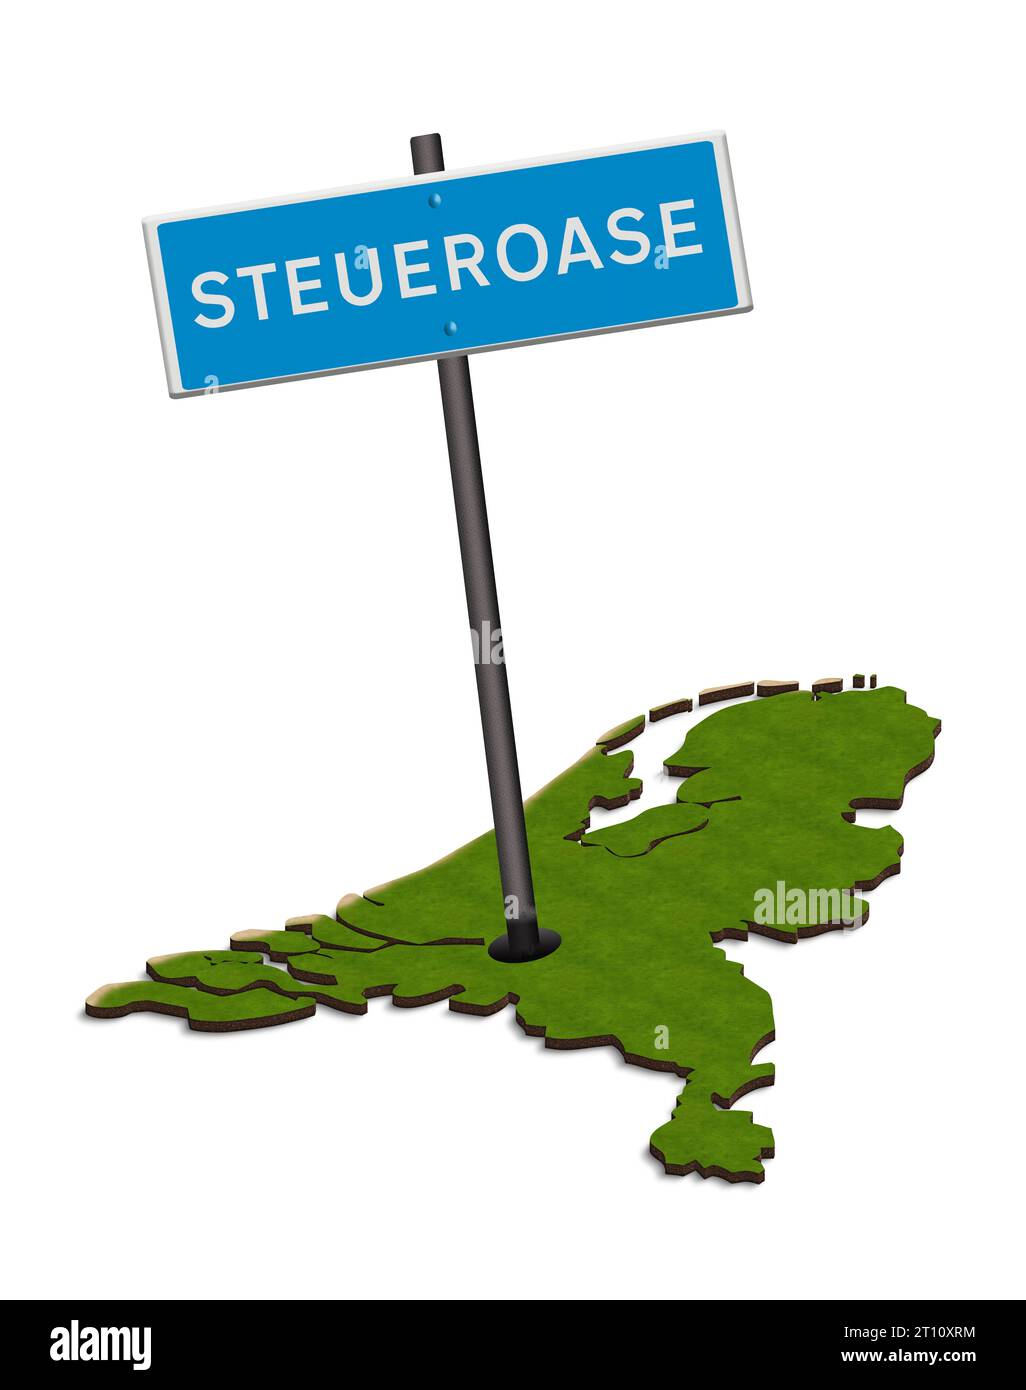 Abbildung - Verkehrszeichen Steueroase mit Karte der Niederlande. Die Niederlande werden häufig als Steueroase für Körperschaftsteuerzwecke angesehen. Innerhalb des Landes wird kritisiert, dass die Bürger zahlen, während Unternehmen eine kostenlose Fahrt erhalten. Crédit : Imago/Alamy Live News Banque D'Images